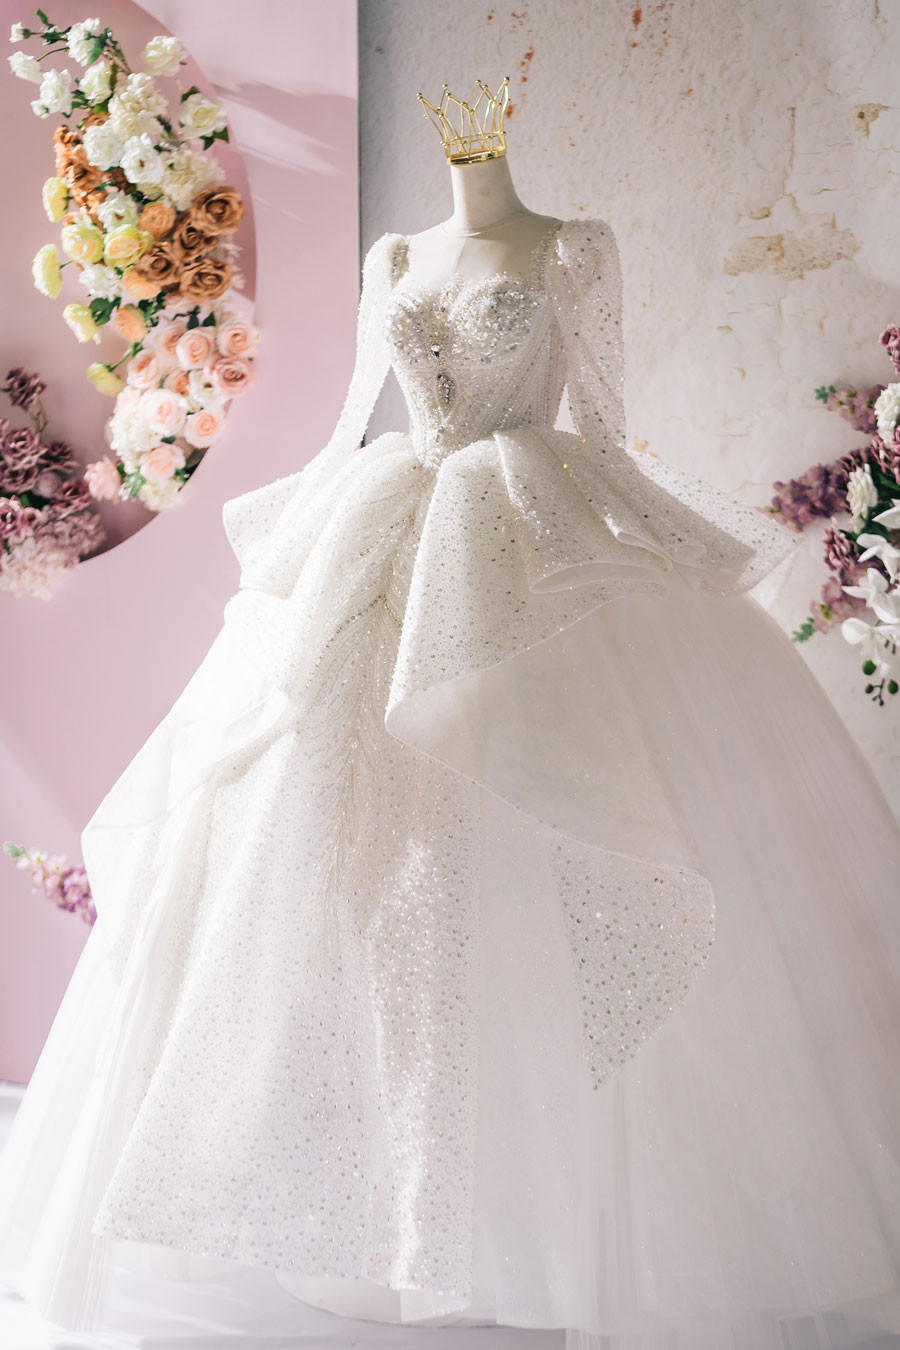 Thiết kế Showroom váy cưới Linh Nga phong cách Tân cổ điển